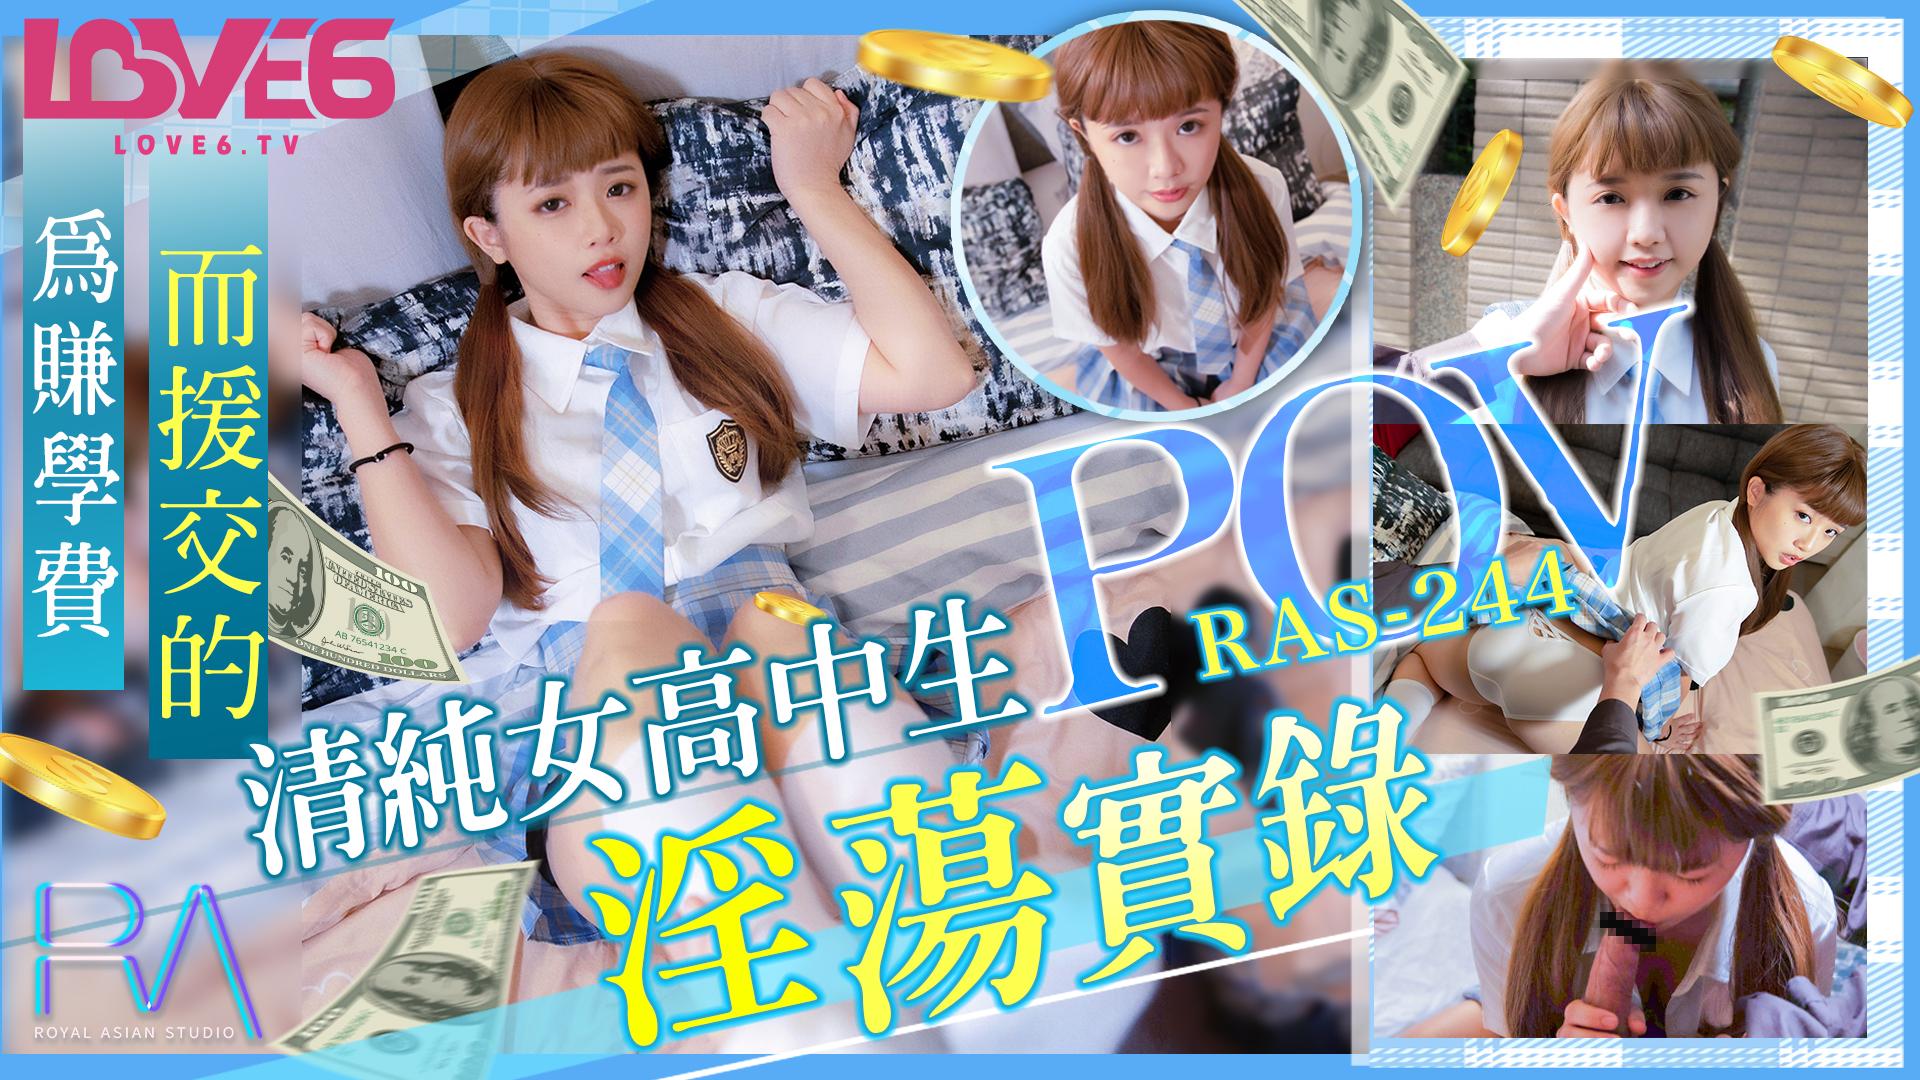 皇家华人 RAS-0244 为赚学费而援交的美女高中生,淫荡实录